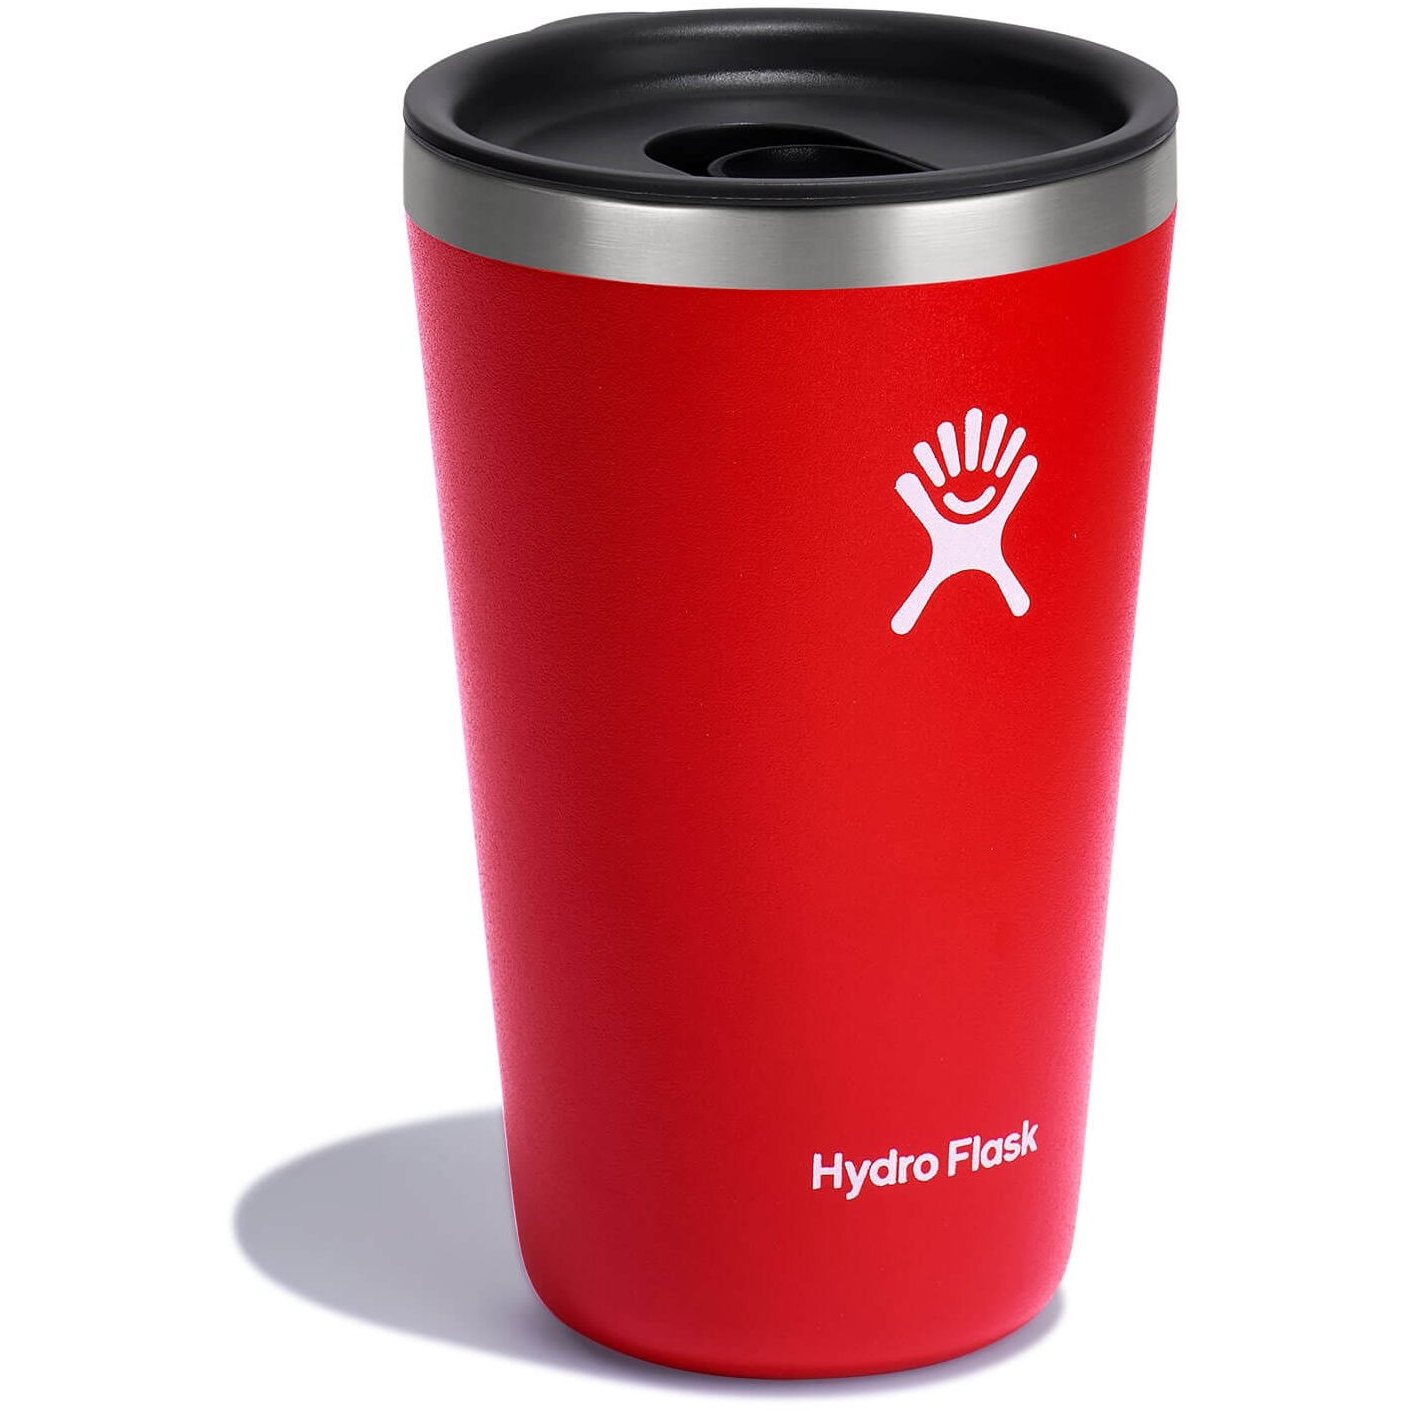 Hydro Flask' 16 oz. All Around™ Tumbler - Laguna